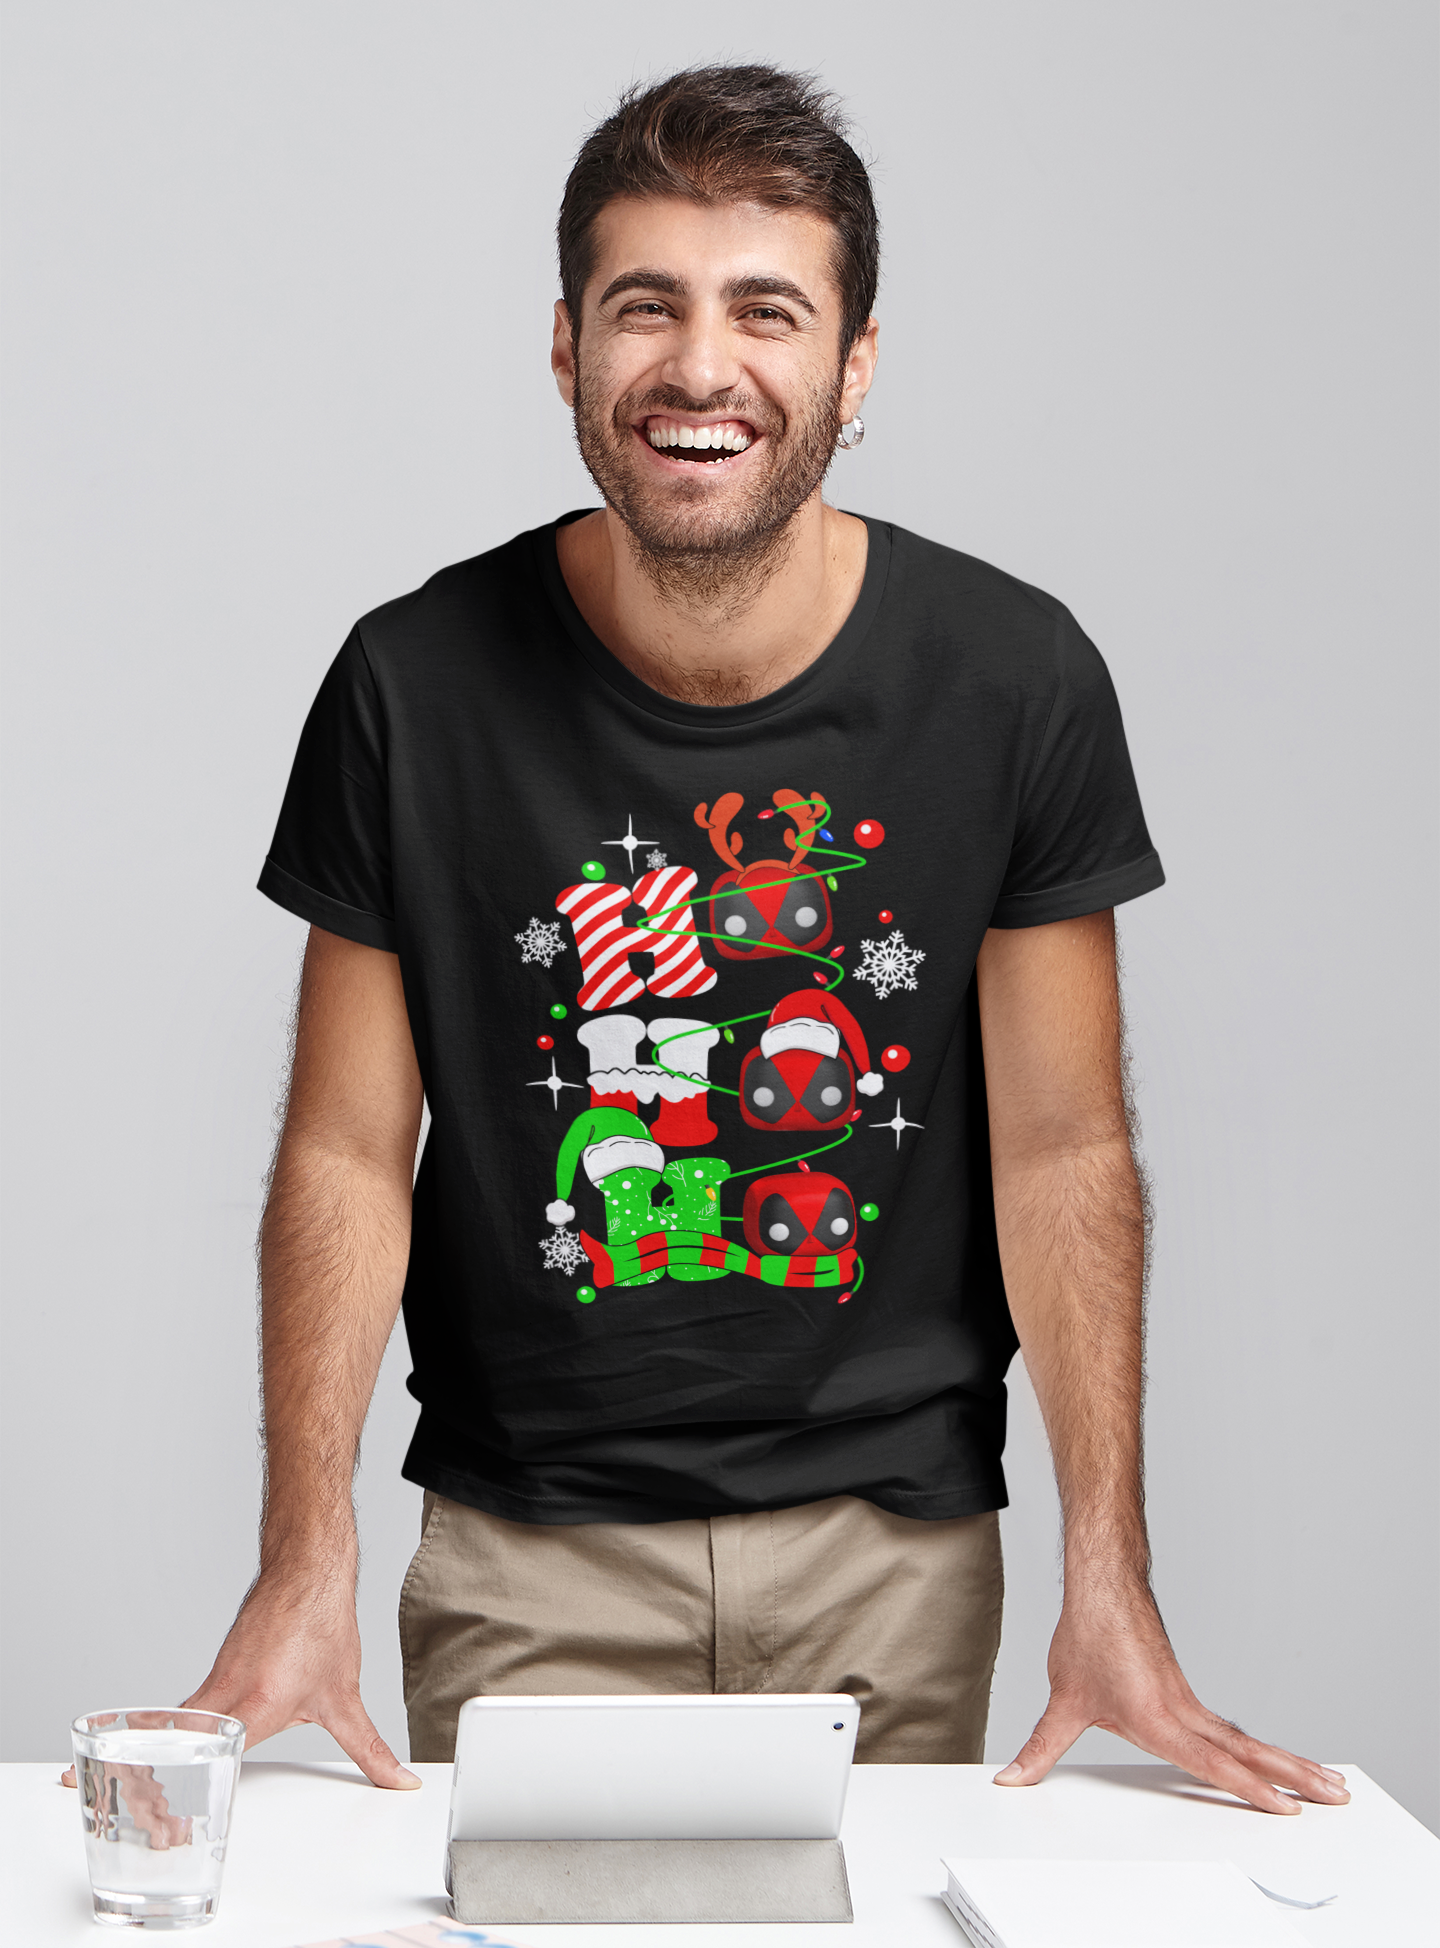 Deadpool T Shirt, Ho Ho Ho Tshirt, Superhero Deadpool T Shirt, Christmas Gifts